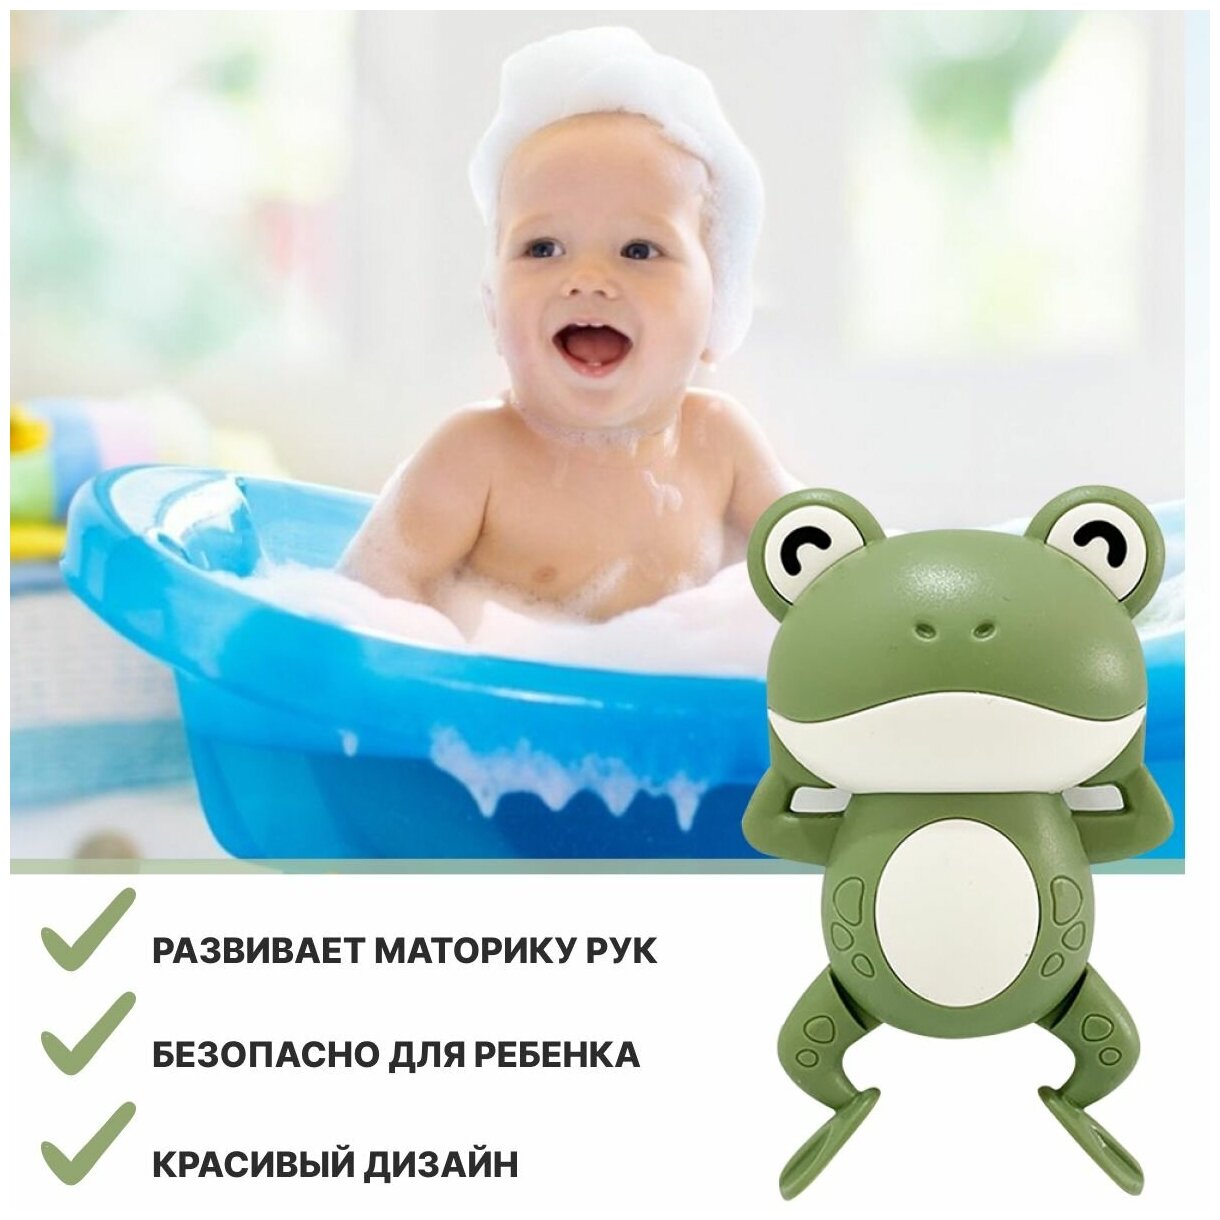 Детская развивающая заводная интерактивная игрушка в ванную для купания детей "радостный лягушонок", зеленая, Universal-Sale